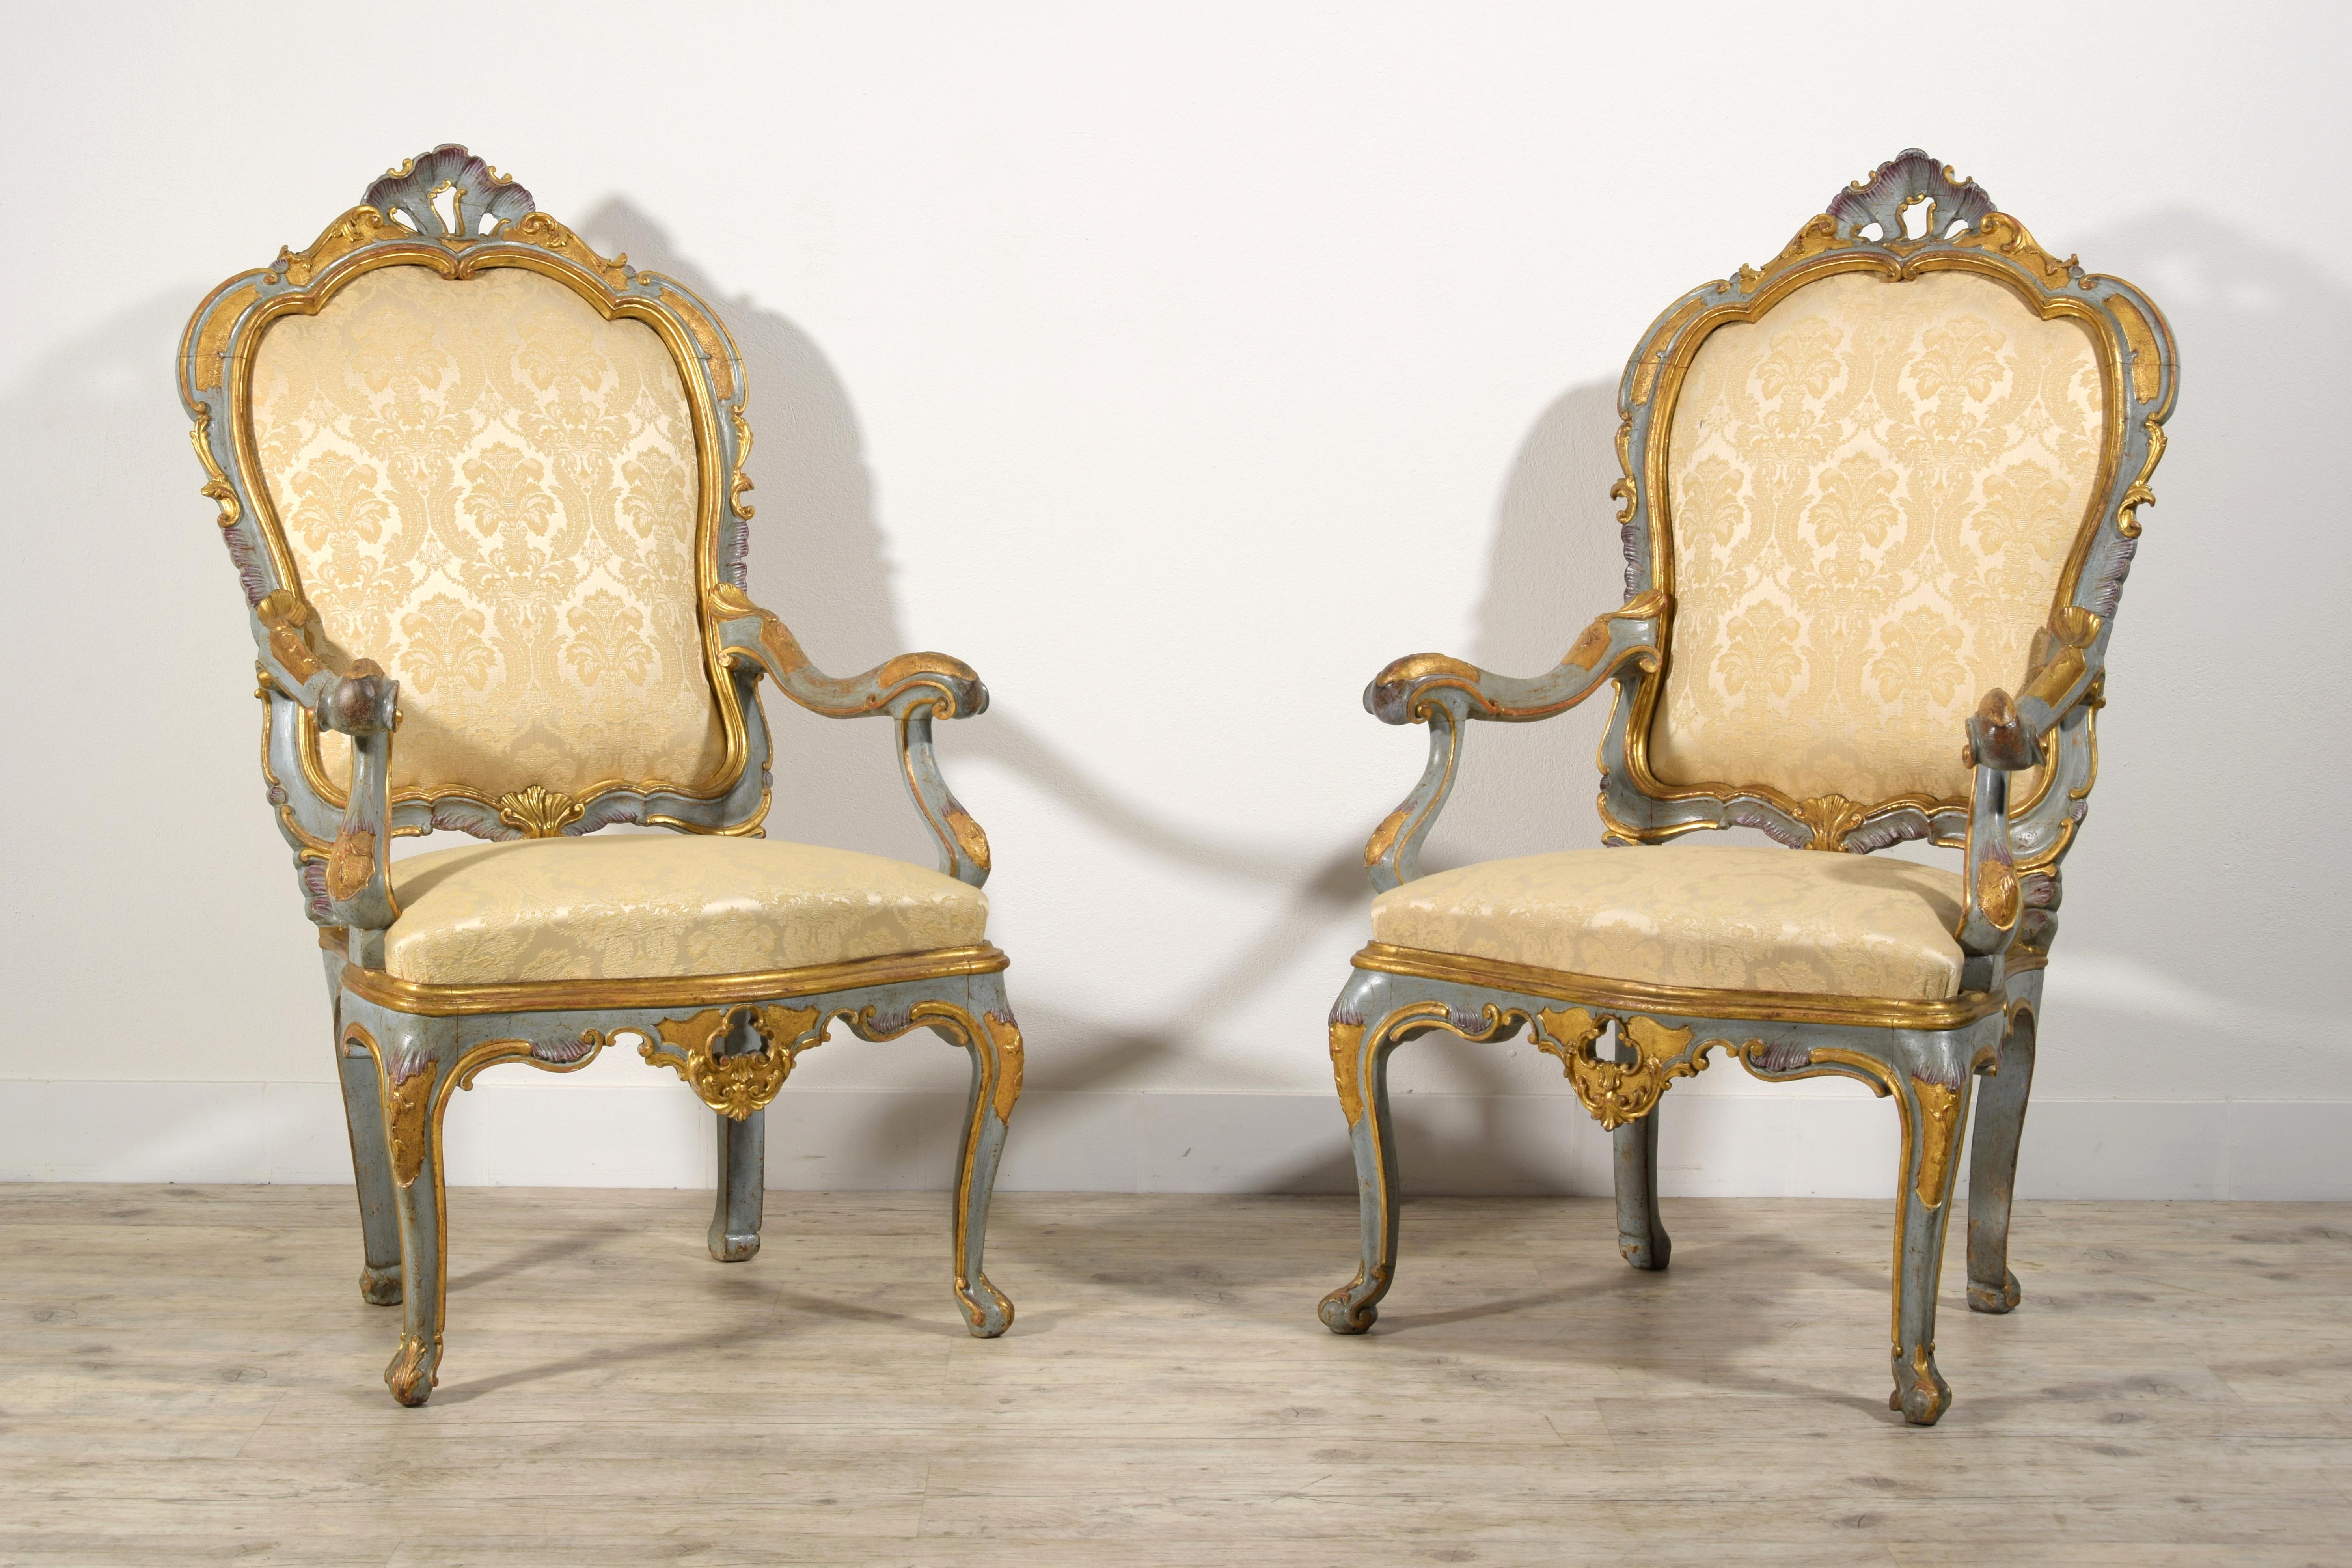 Paire de grands fauteuils vénitiens en bois doré laqué Barocchetto du XVIIIe siècle 

Cette belle et importante paire de grands fauteuils à barocchetto a été fabriquée à Venise, en Italie, au milieu du XVIIIe siècle.
La structure est en bois de